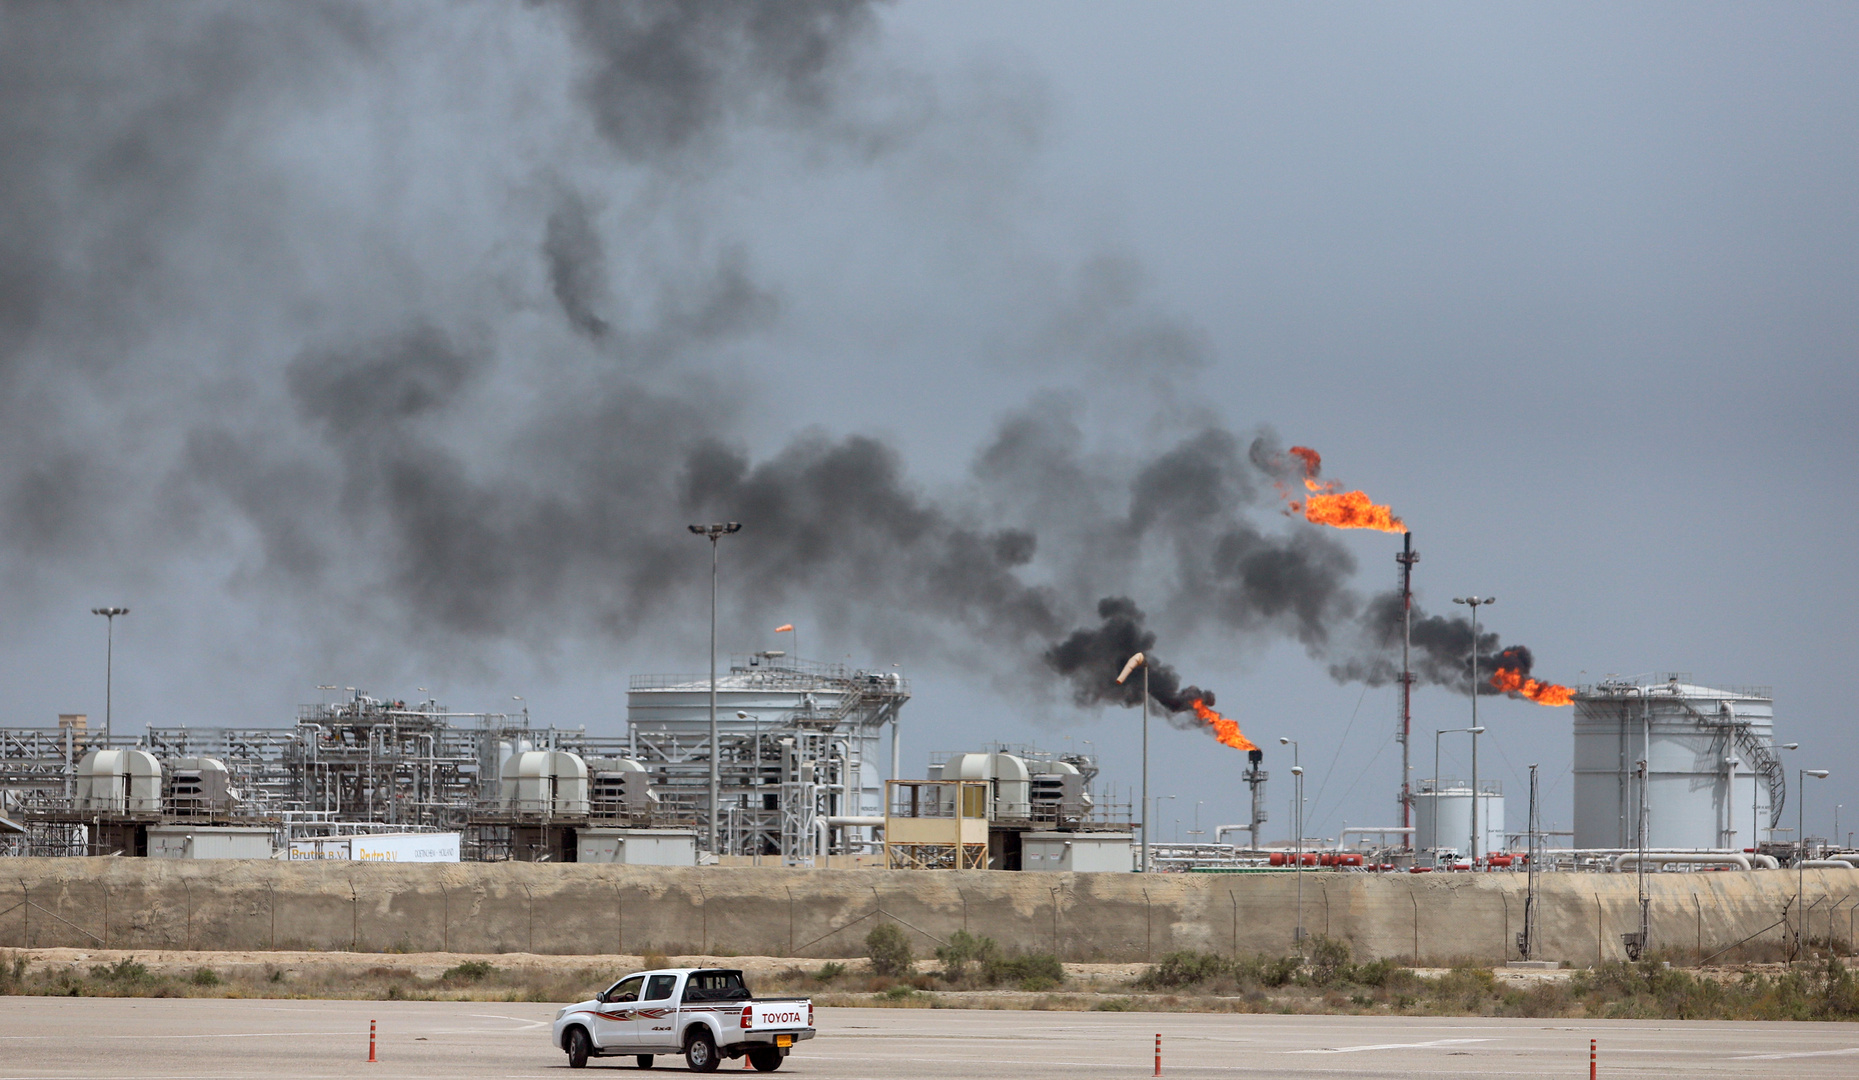 العراق يخطط لزيادة صادرات النفط في الربع الأول من 2022